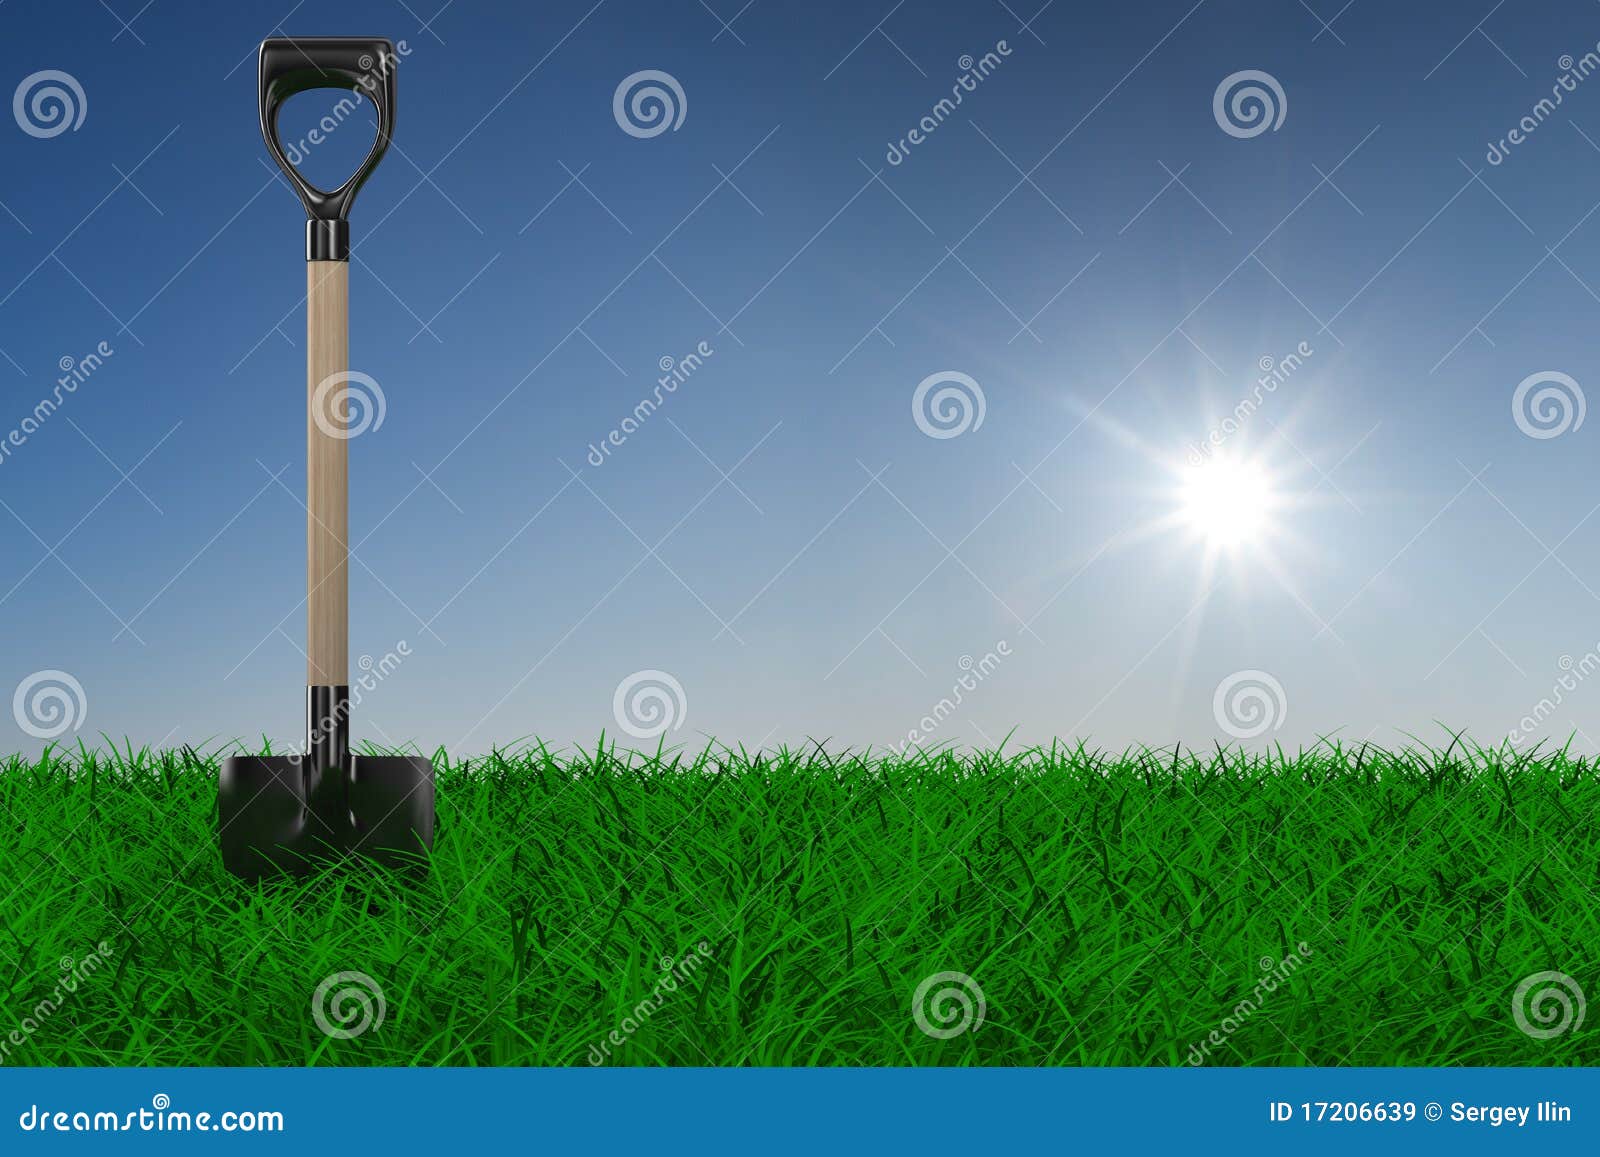 shovel on grass. garden tool